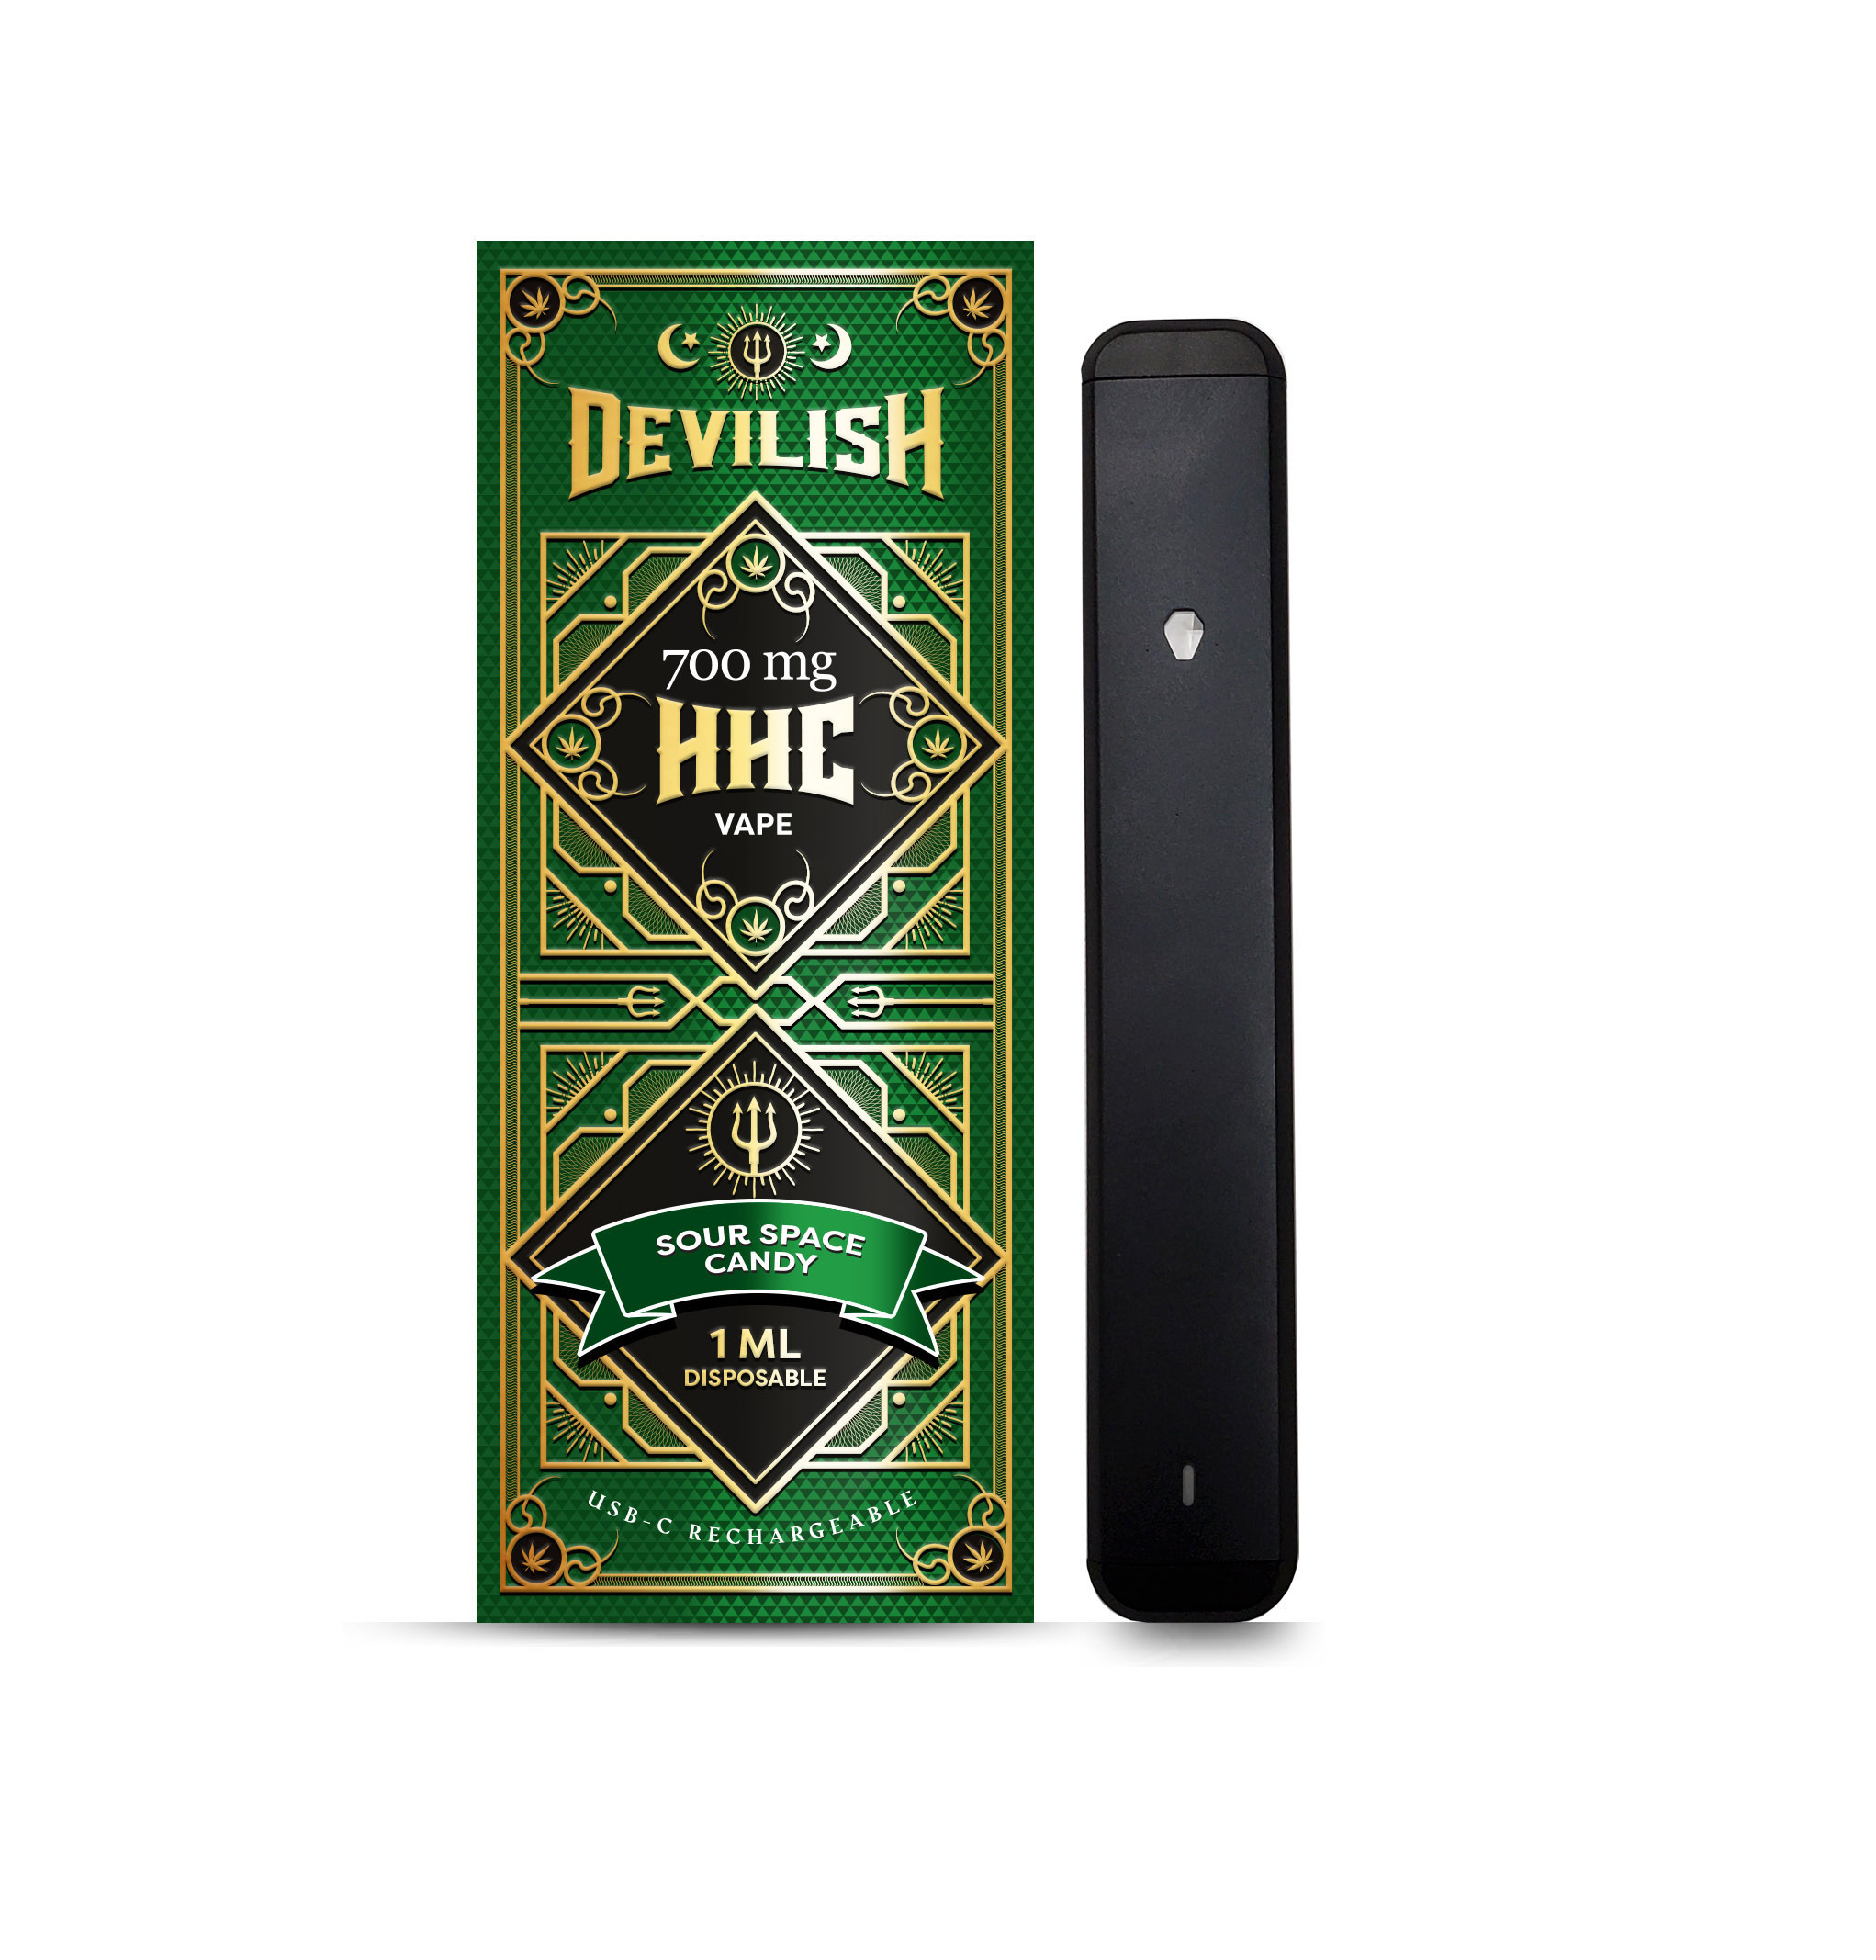 Devilish 700mg HHC Disposable Vape Pen, Sour Space Candy